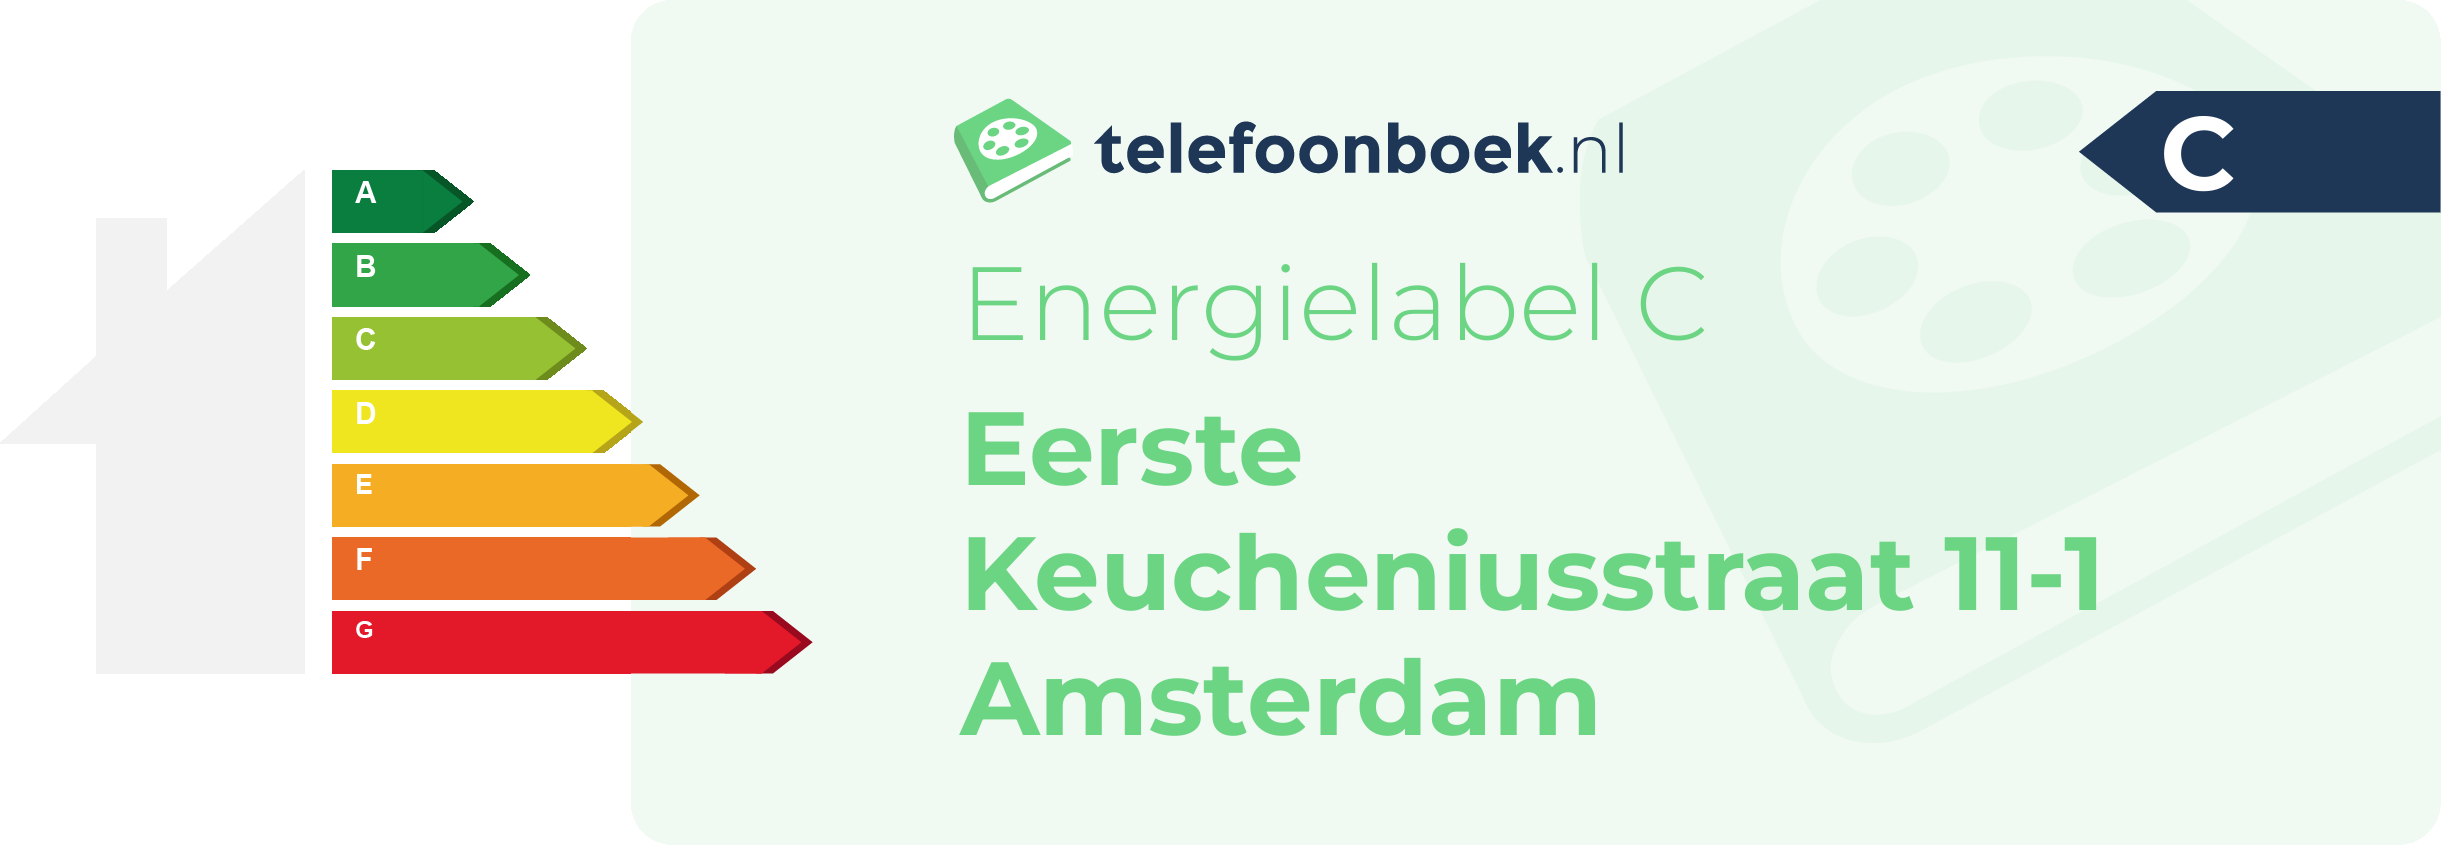 Energielabel Eerste Keucheniusstraat 11-1 Amsterdam